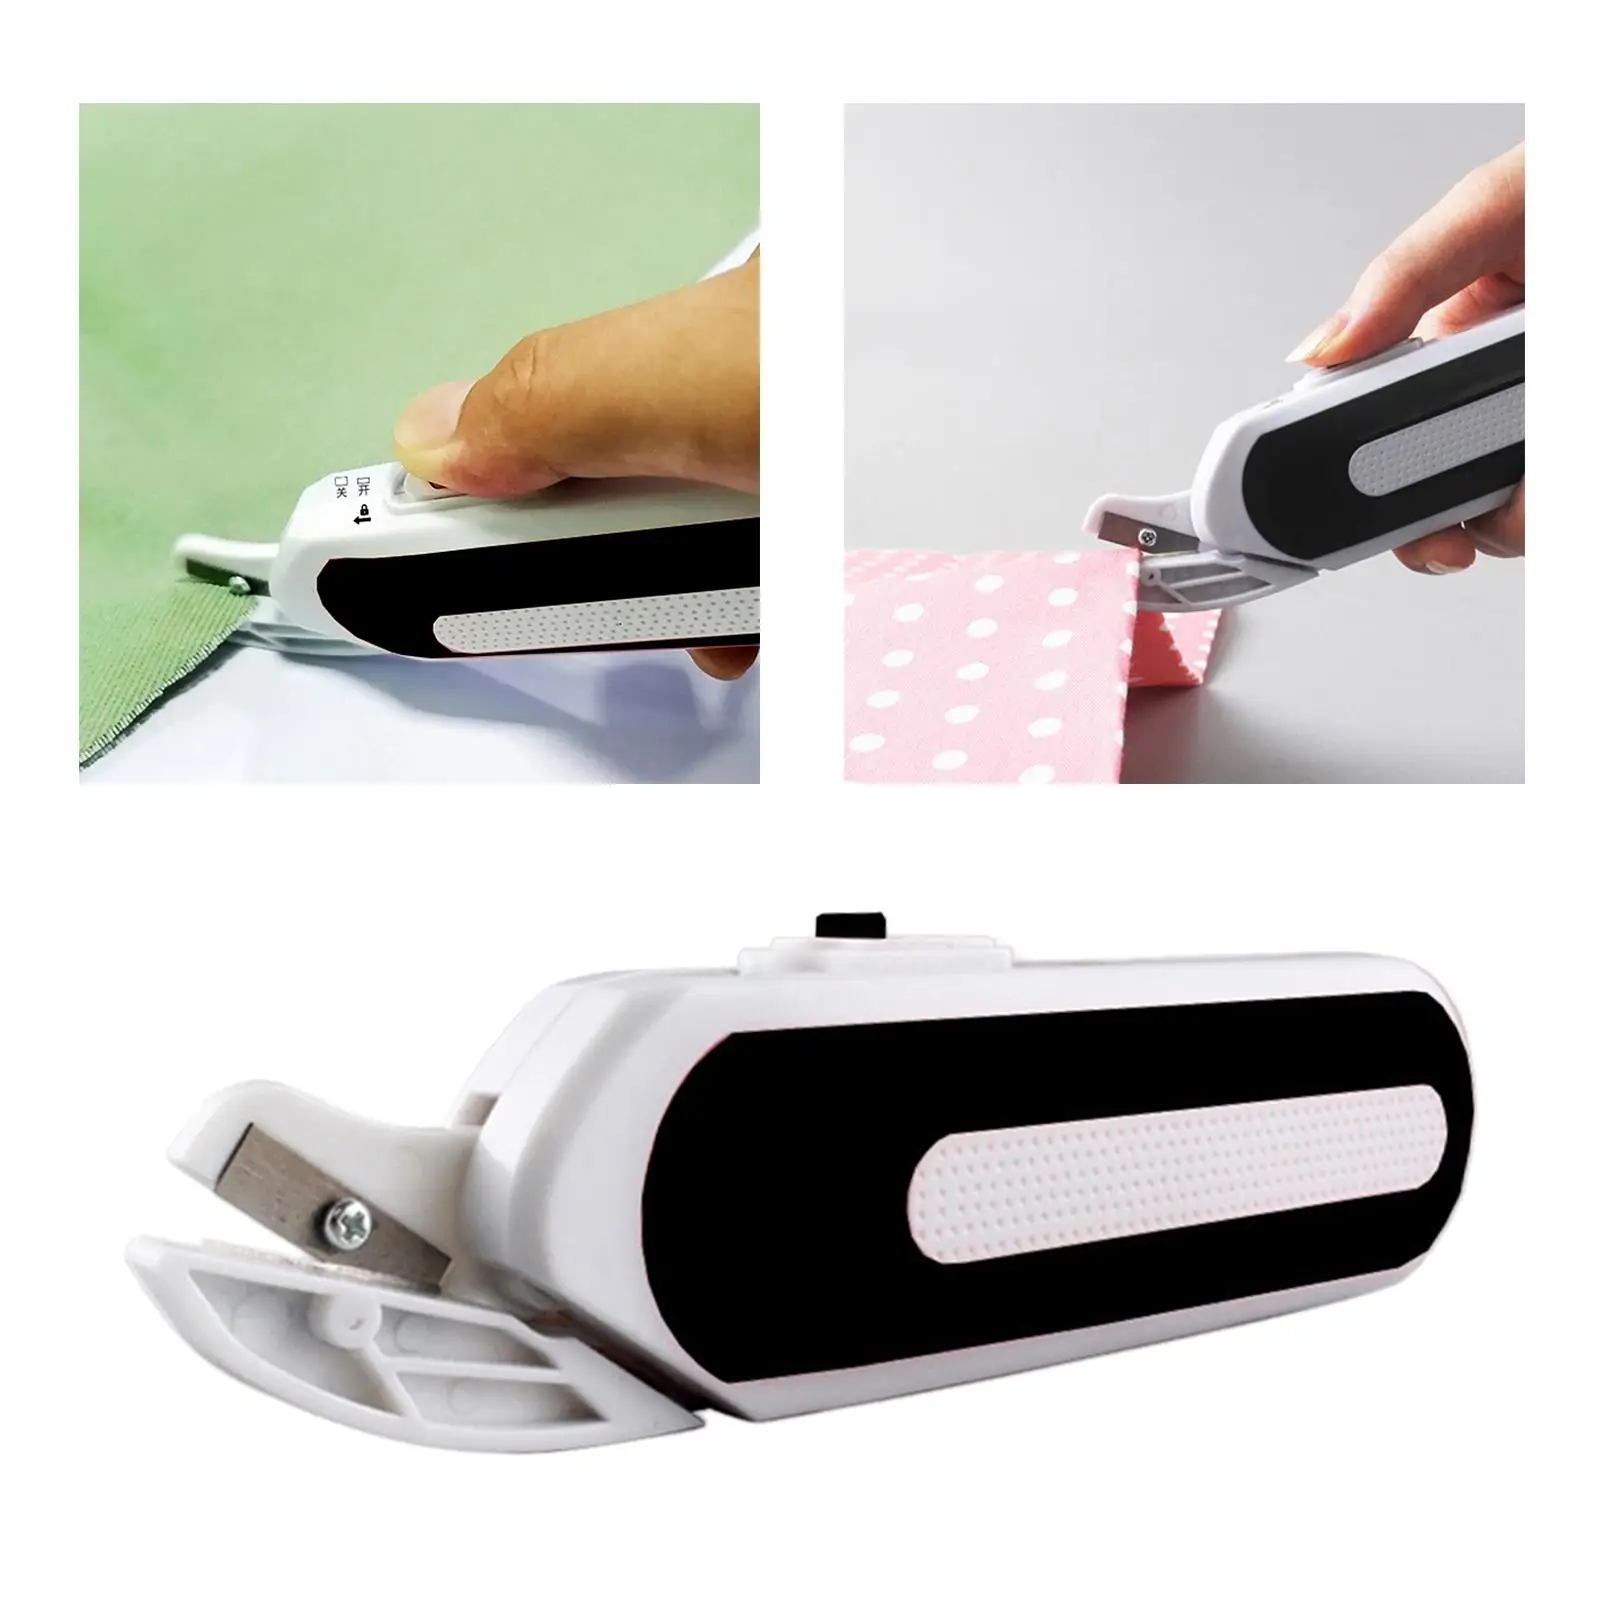 Mini Portable Electrics for Cardboard Cutting Tool